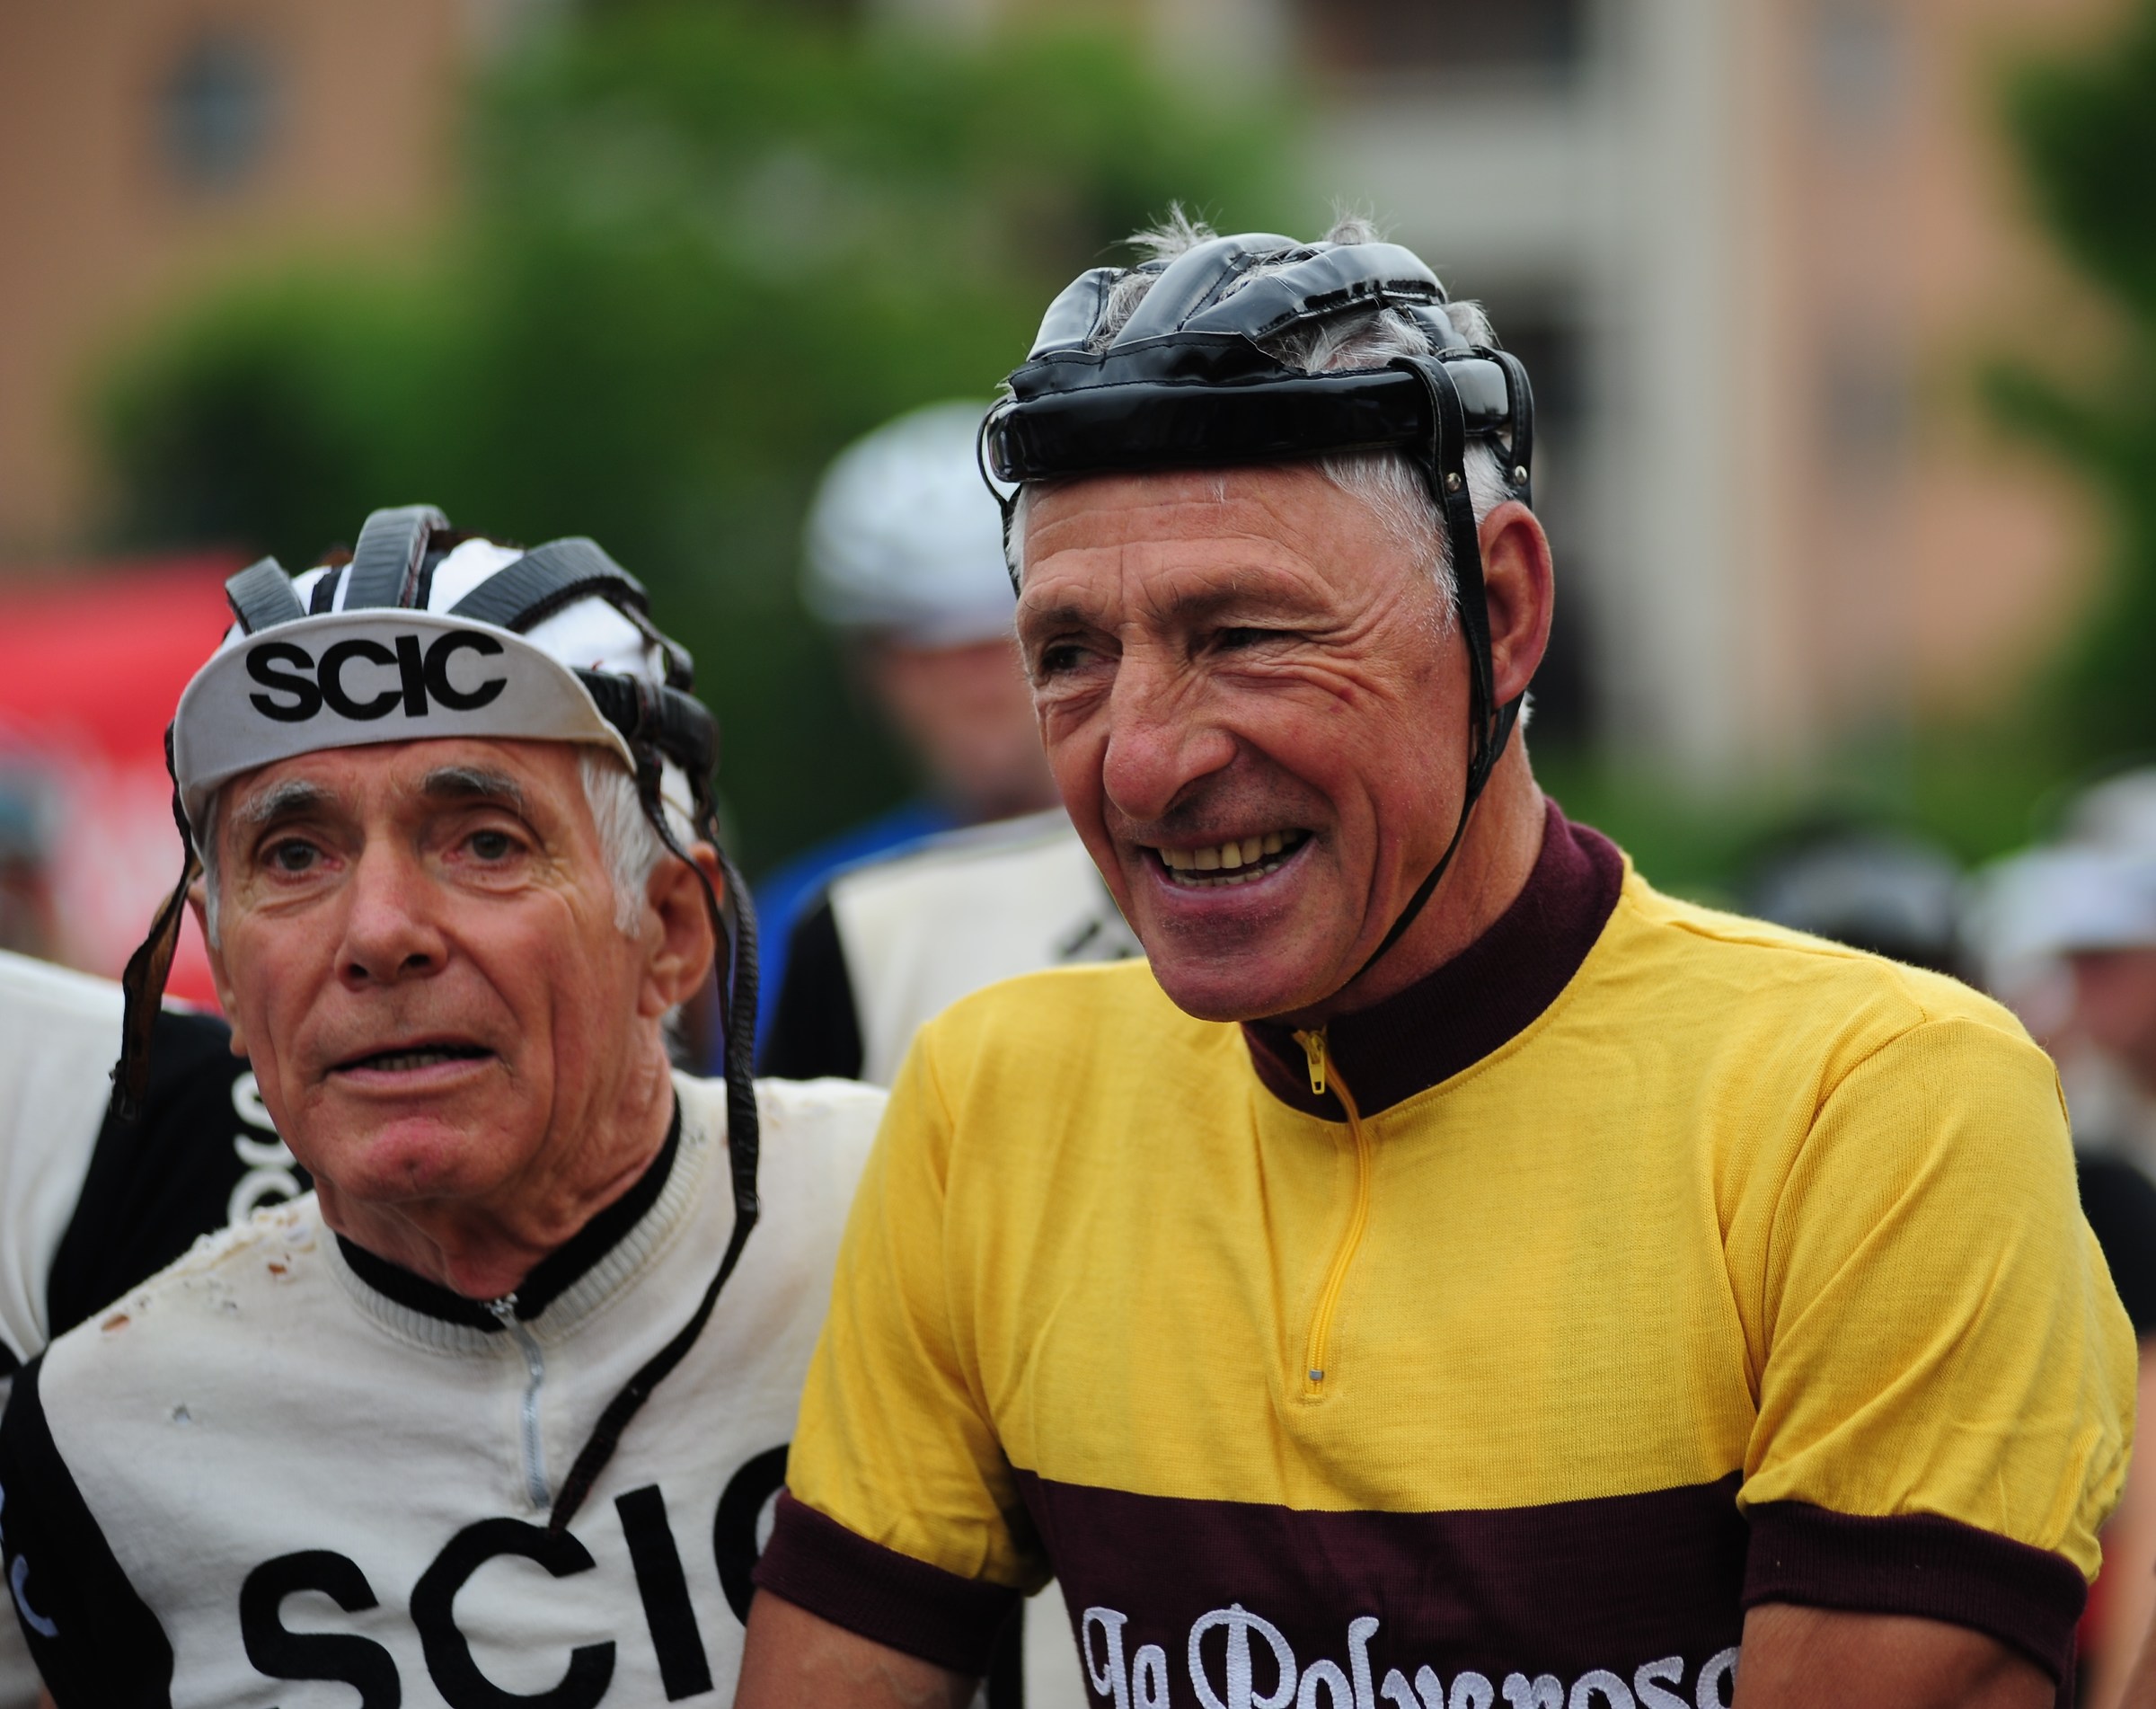 Francesco Moser e Giorgio Armani -La Polverosa 2015...